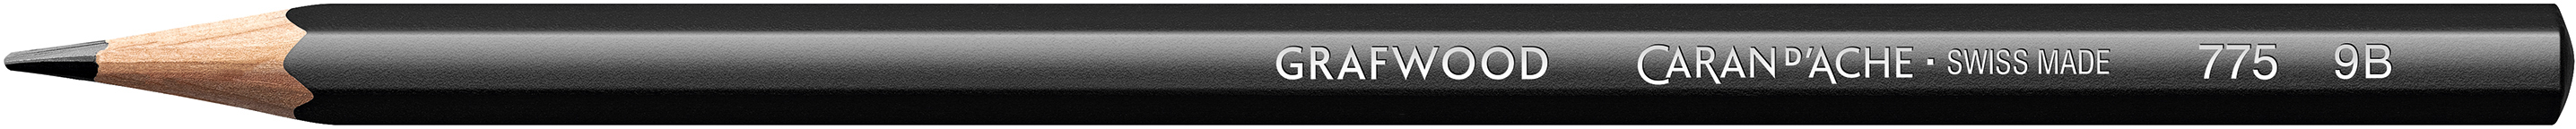 CARAN D'ACHE Crayon Grafwood 9B 775.259